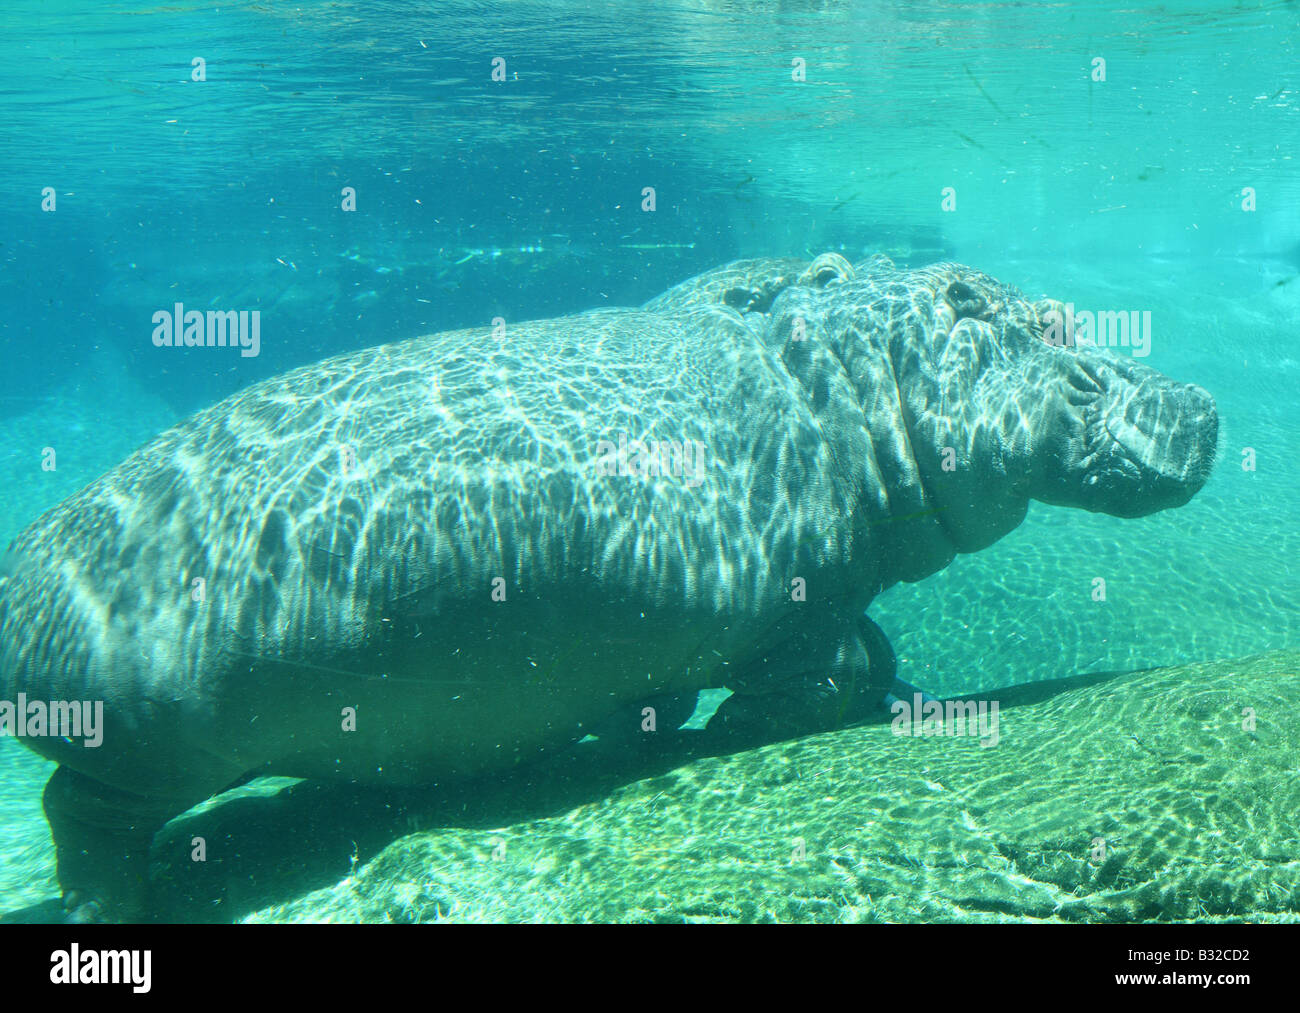 Hippo Hippopotamus underwater Stock Photo